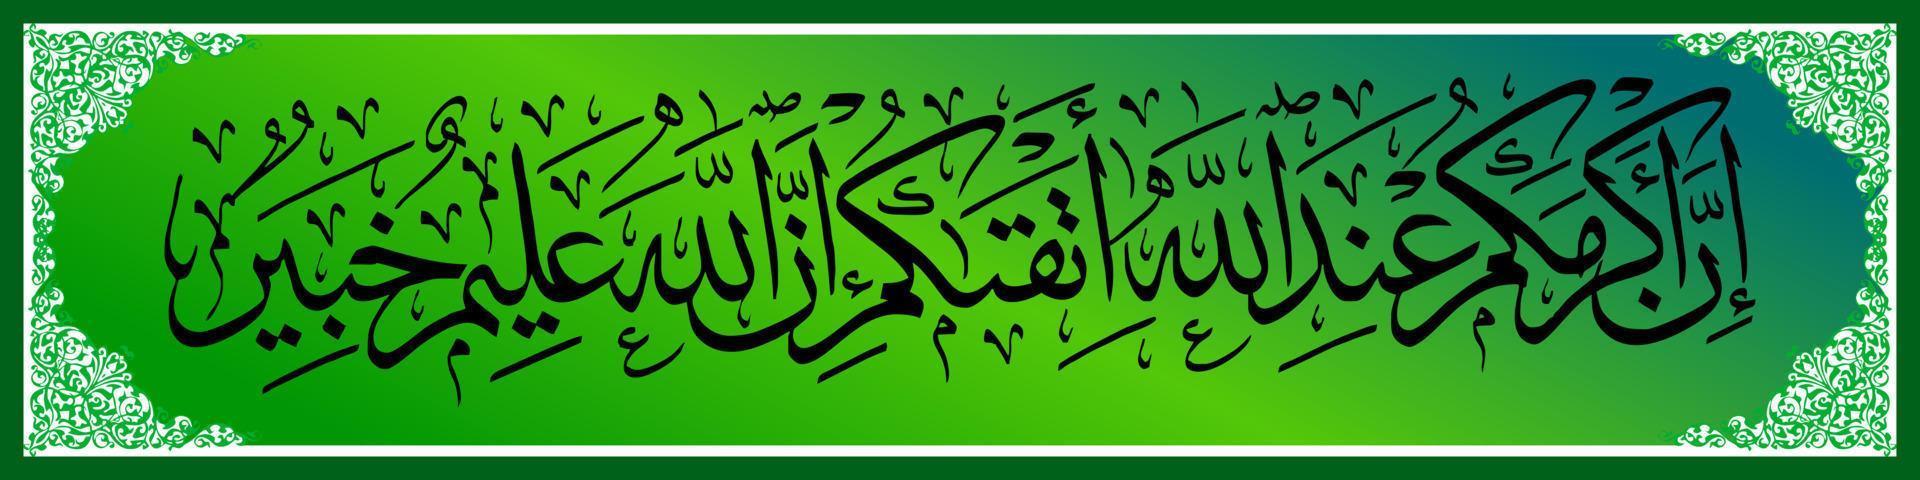 calligraphie arabe, al qur'an sourate al hujurat 13, traduction en effet, le plus noble d'entre vous aux yeux d'allah est le plus pieux d'entre vous. en effet, allah est omniscient, omniscient. vecteur